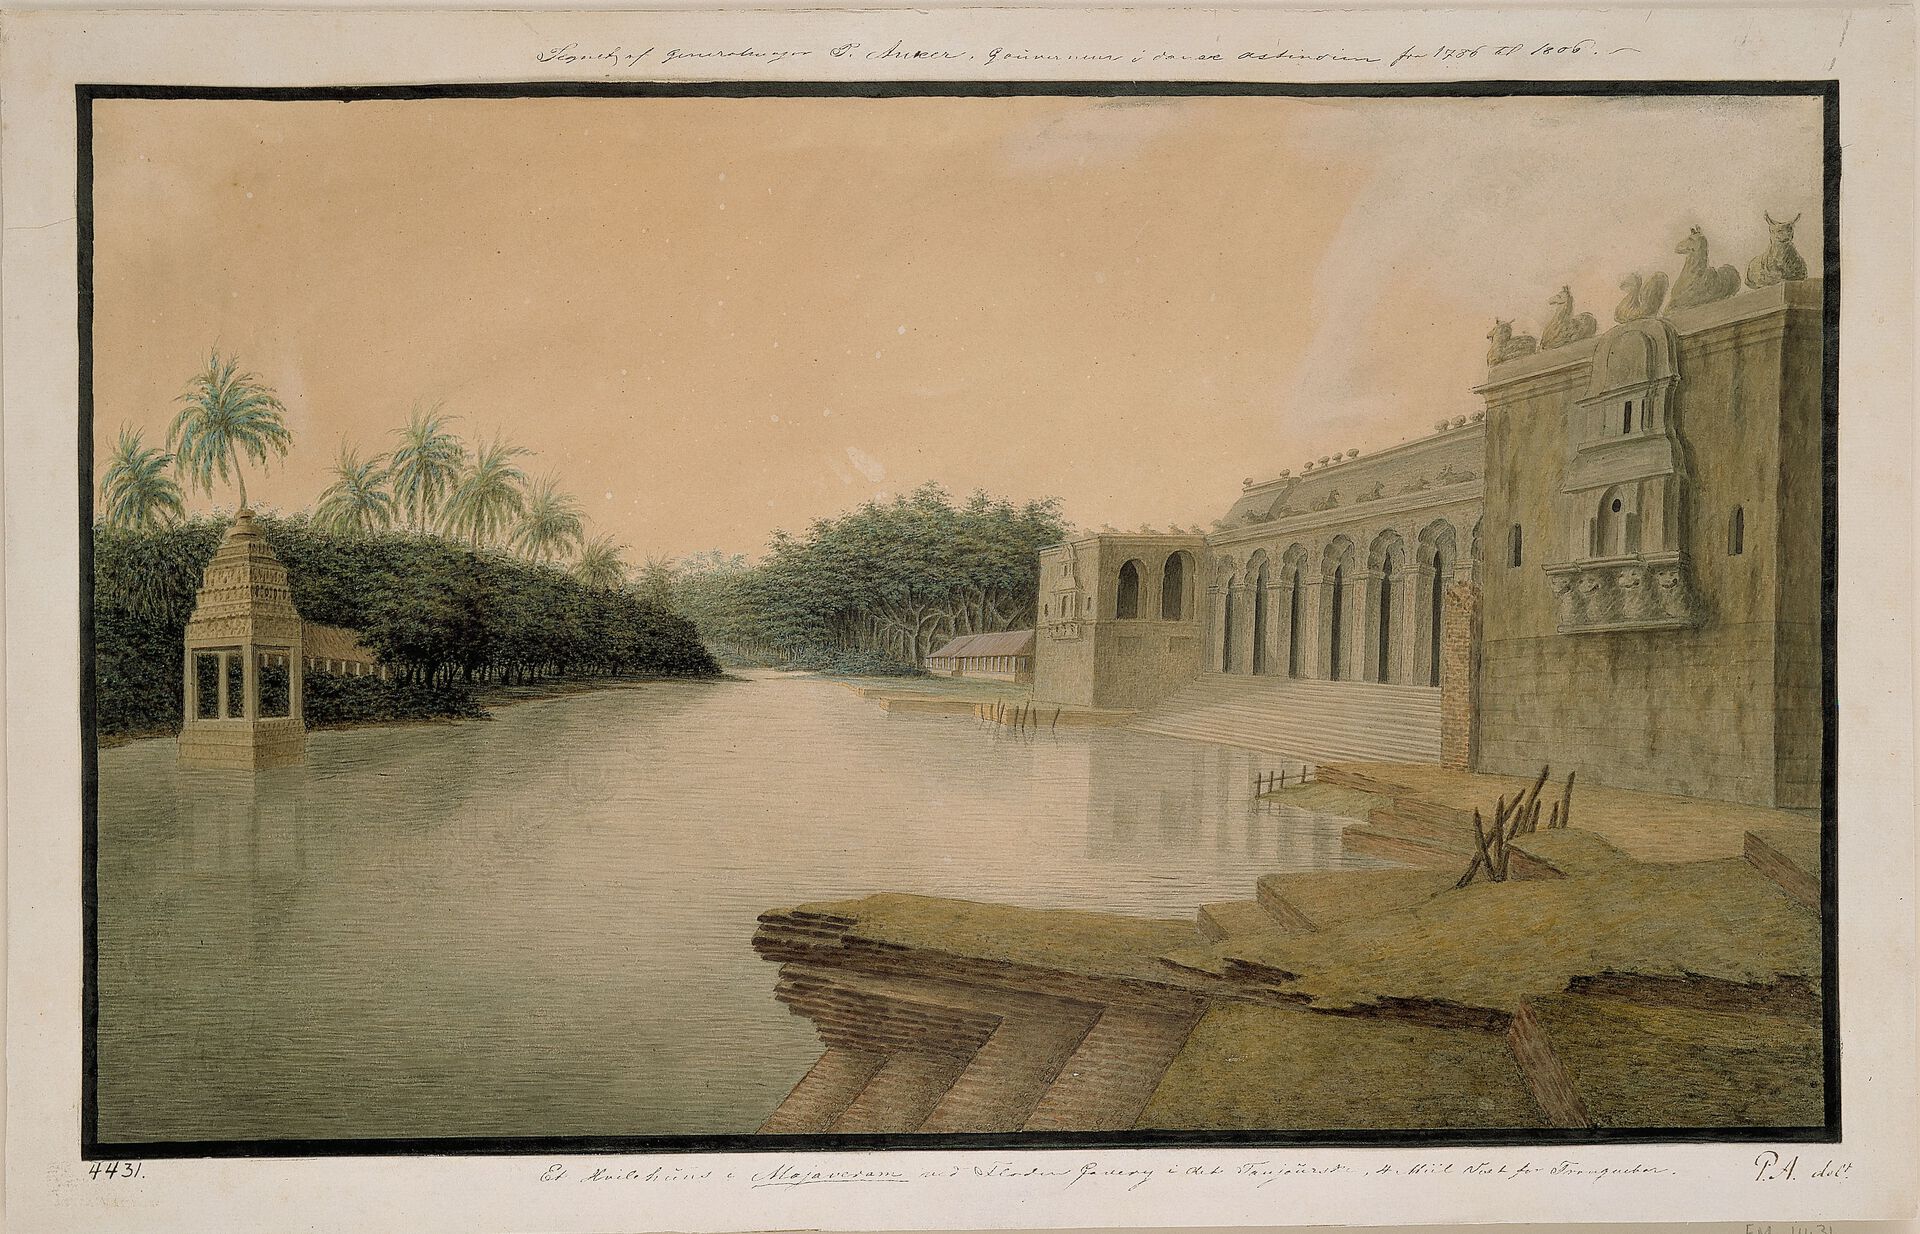 Ankers Maleri med tittel:  'Hvilehus ved Cauvery floden' Cauvery elven og gloden ble selveste livsårene for oppveksten av Chola-riket